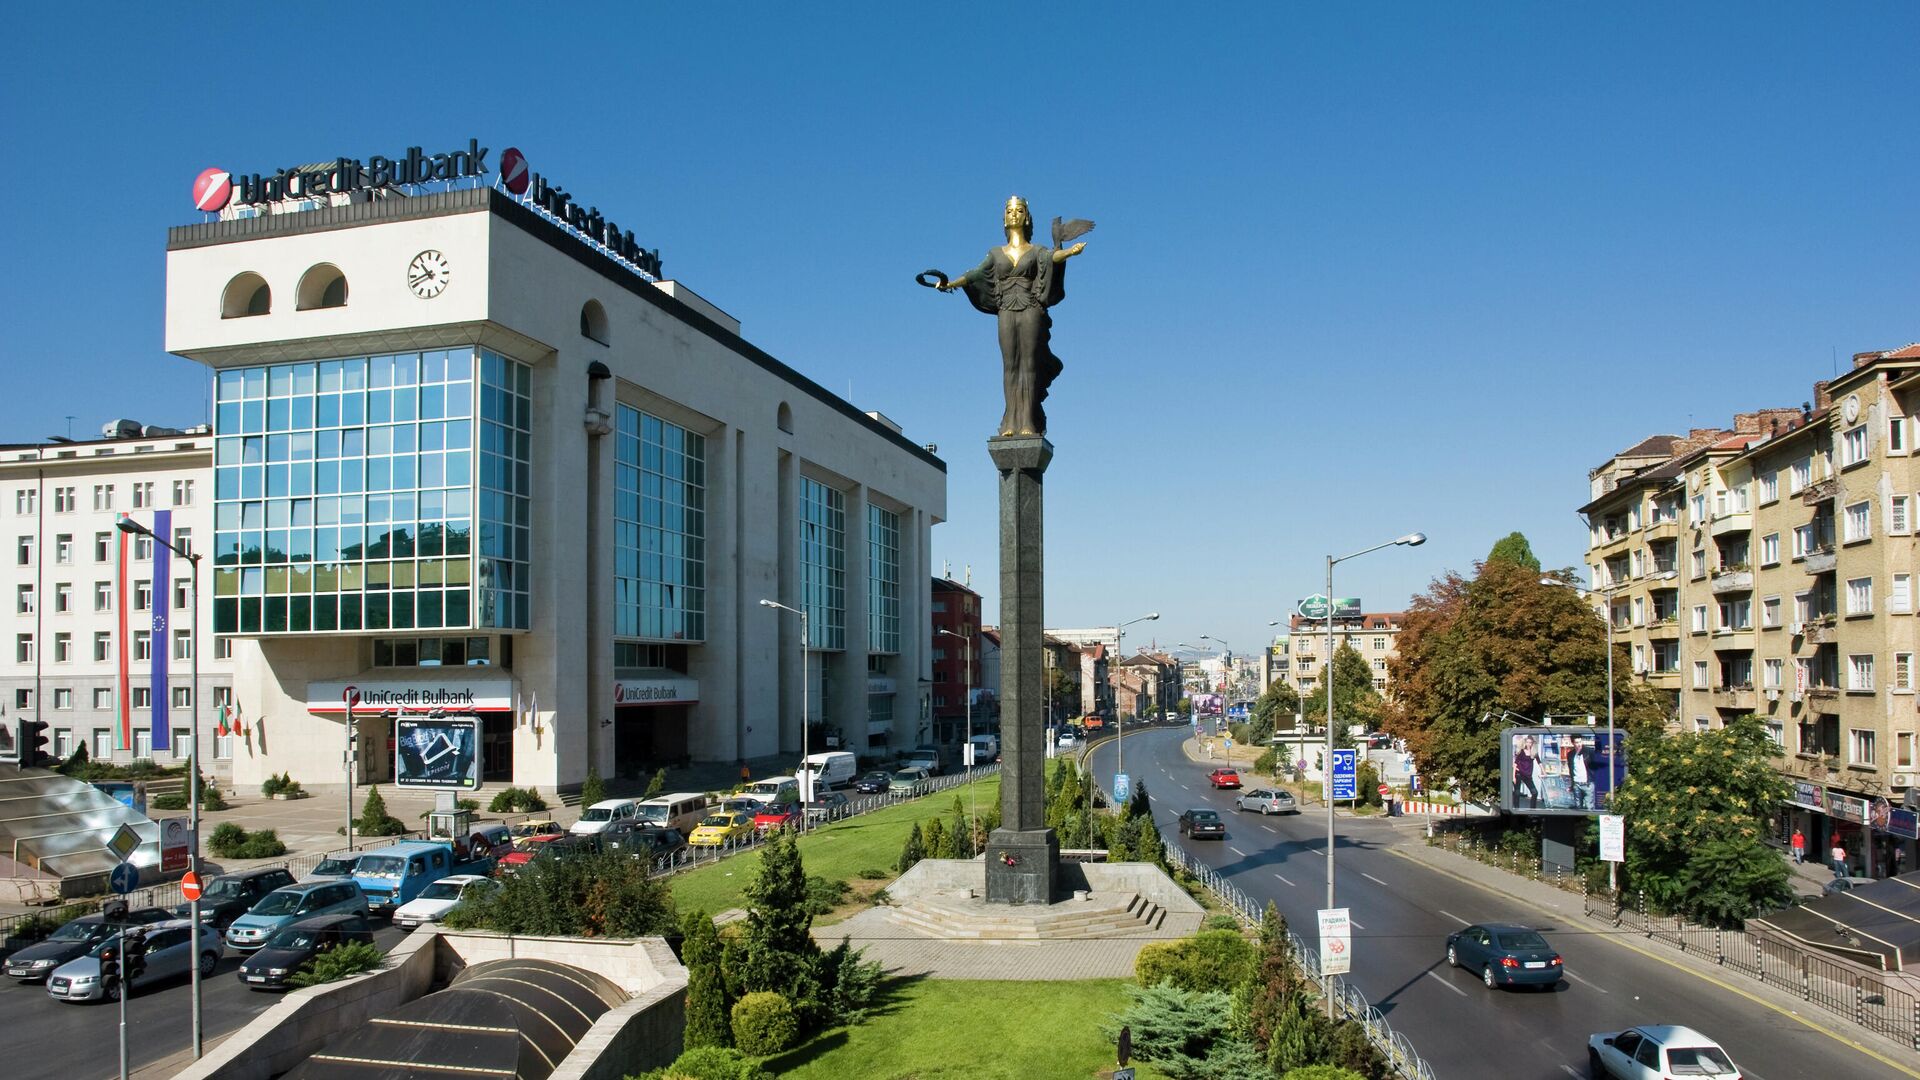 София, столица Болгарии - РИА Новости, 1920, 22.09.2021